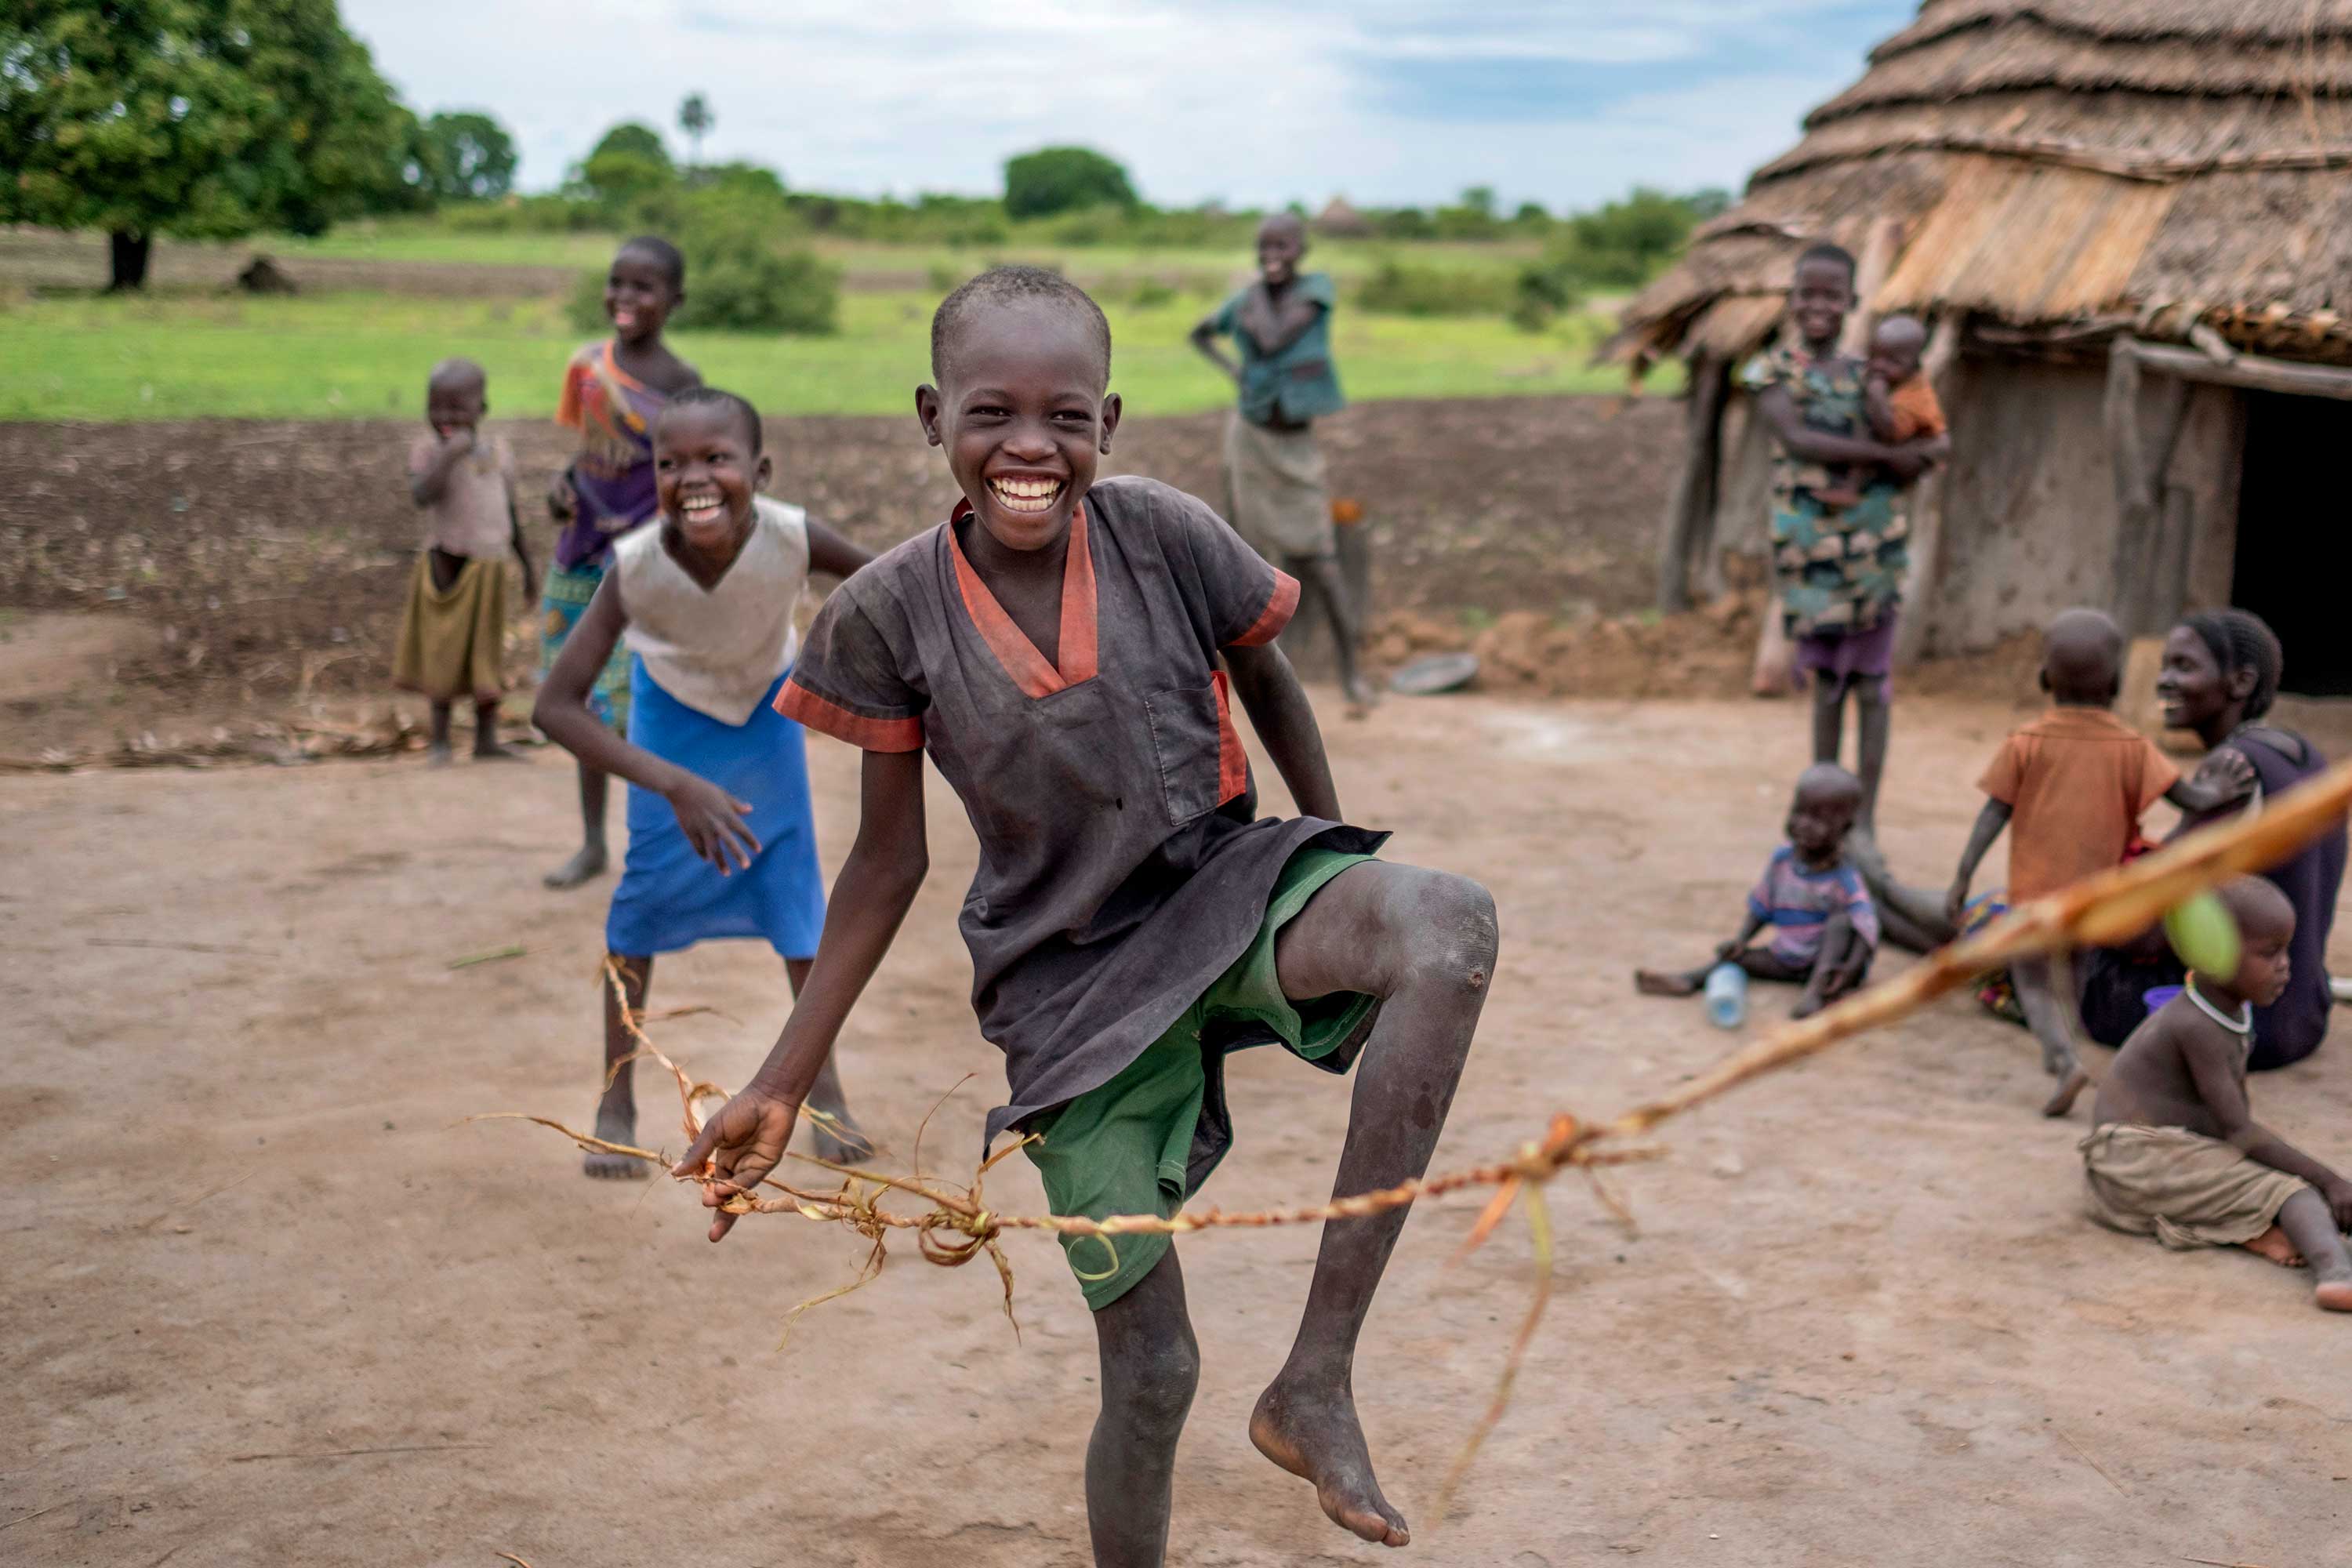 Village children playing